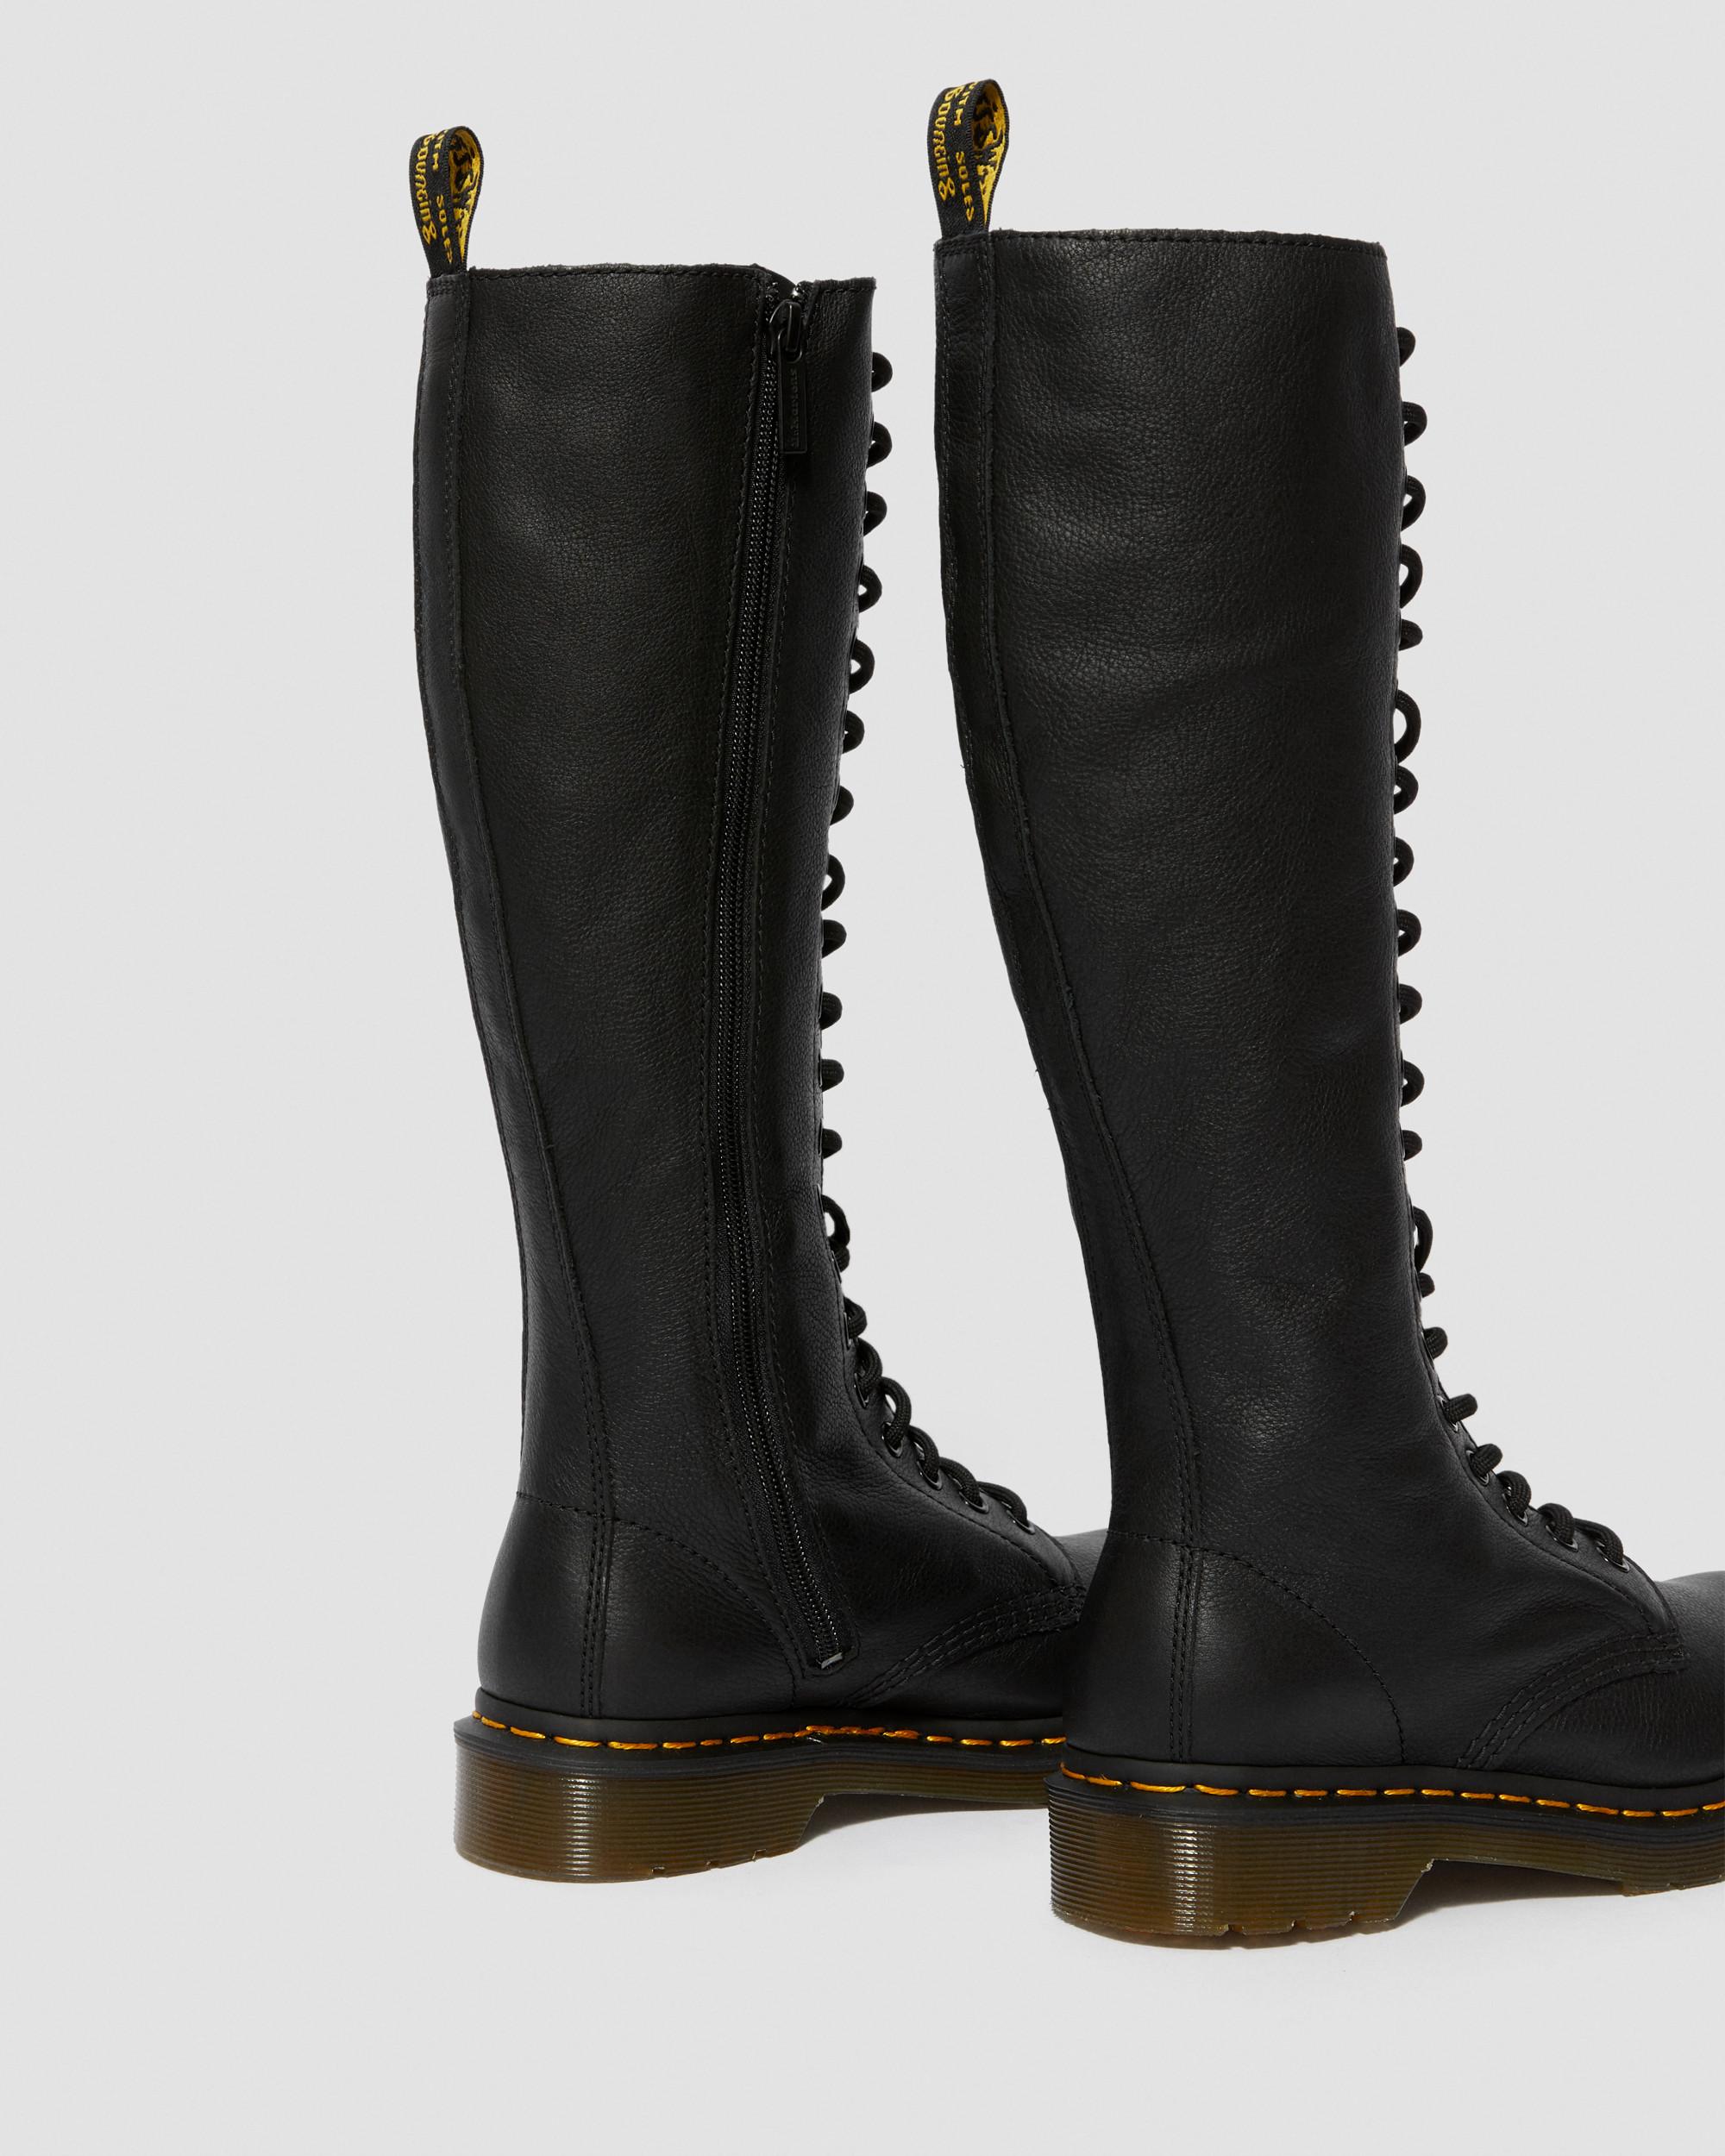 Toeschouwer Shilling Maak een naam 1B60 Virginia Leather Knee High Boots | Dr. Martens